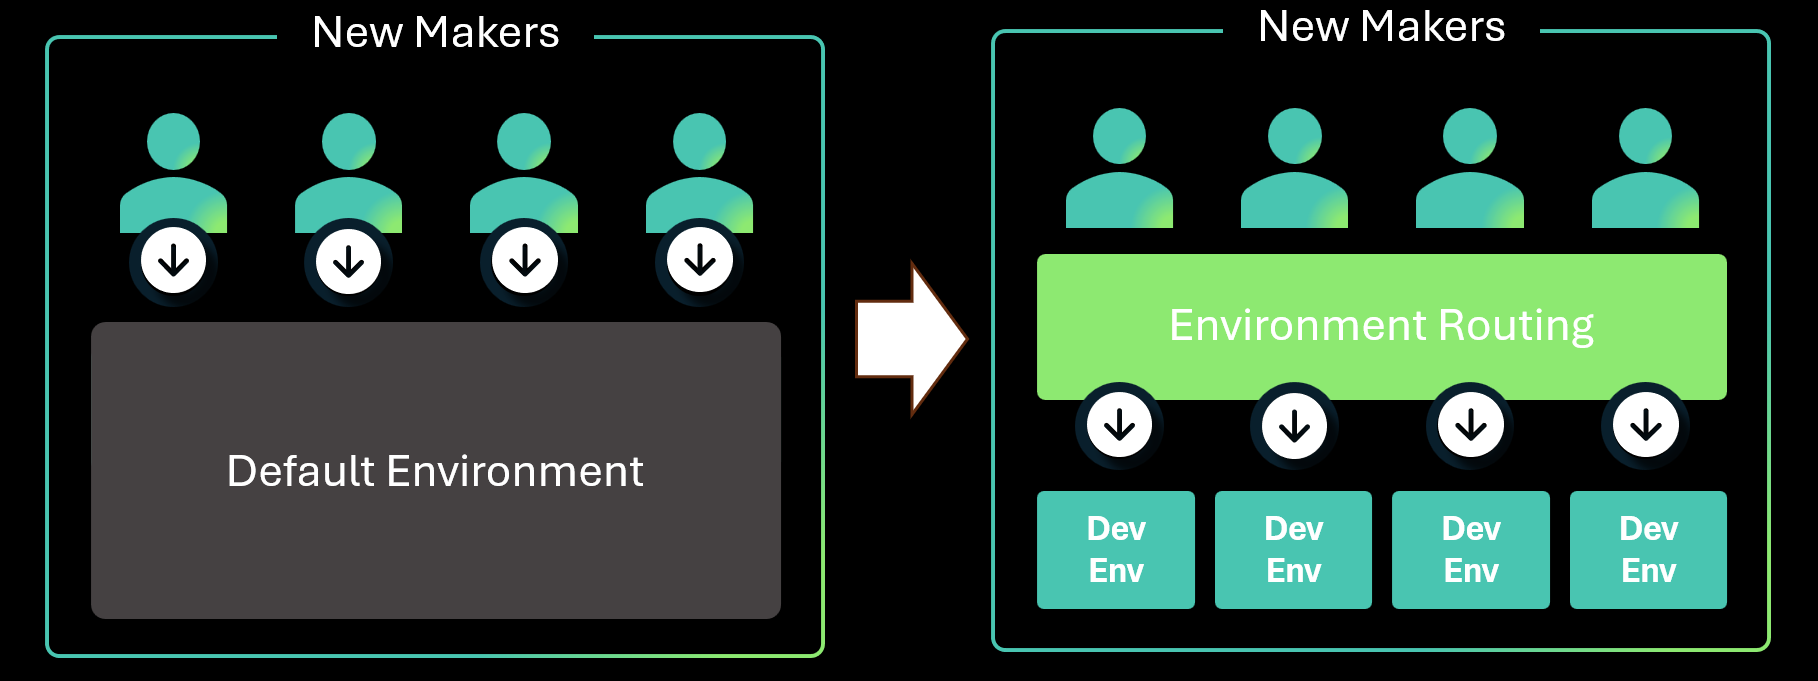 左側には、4 人のメーカーがデフォルトの環境を使用する中央の共有環境戦略、右側には、4 人のメーカーが個別の開発者環境にルーティングする環境ルーティング戦略の図があります。